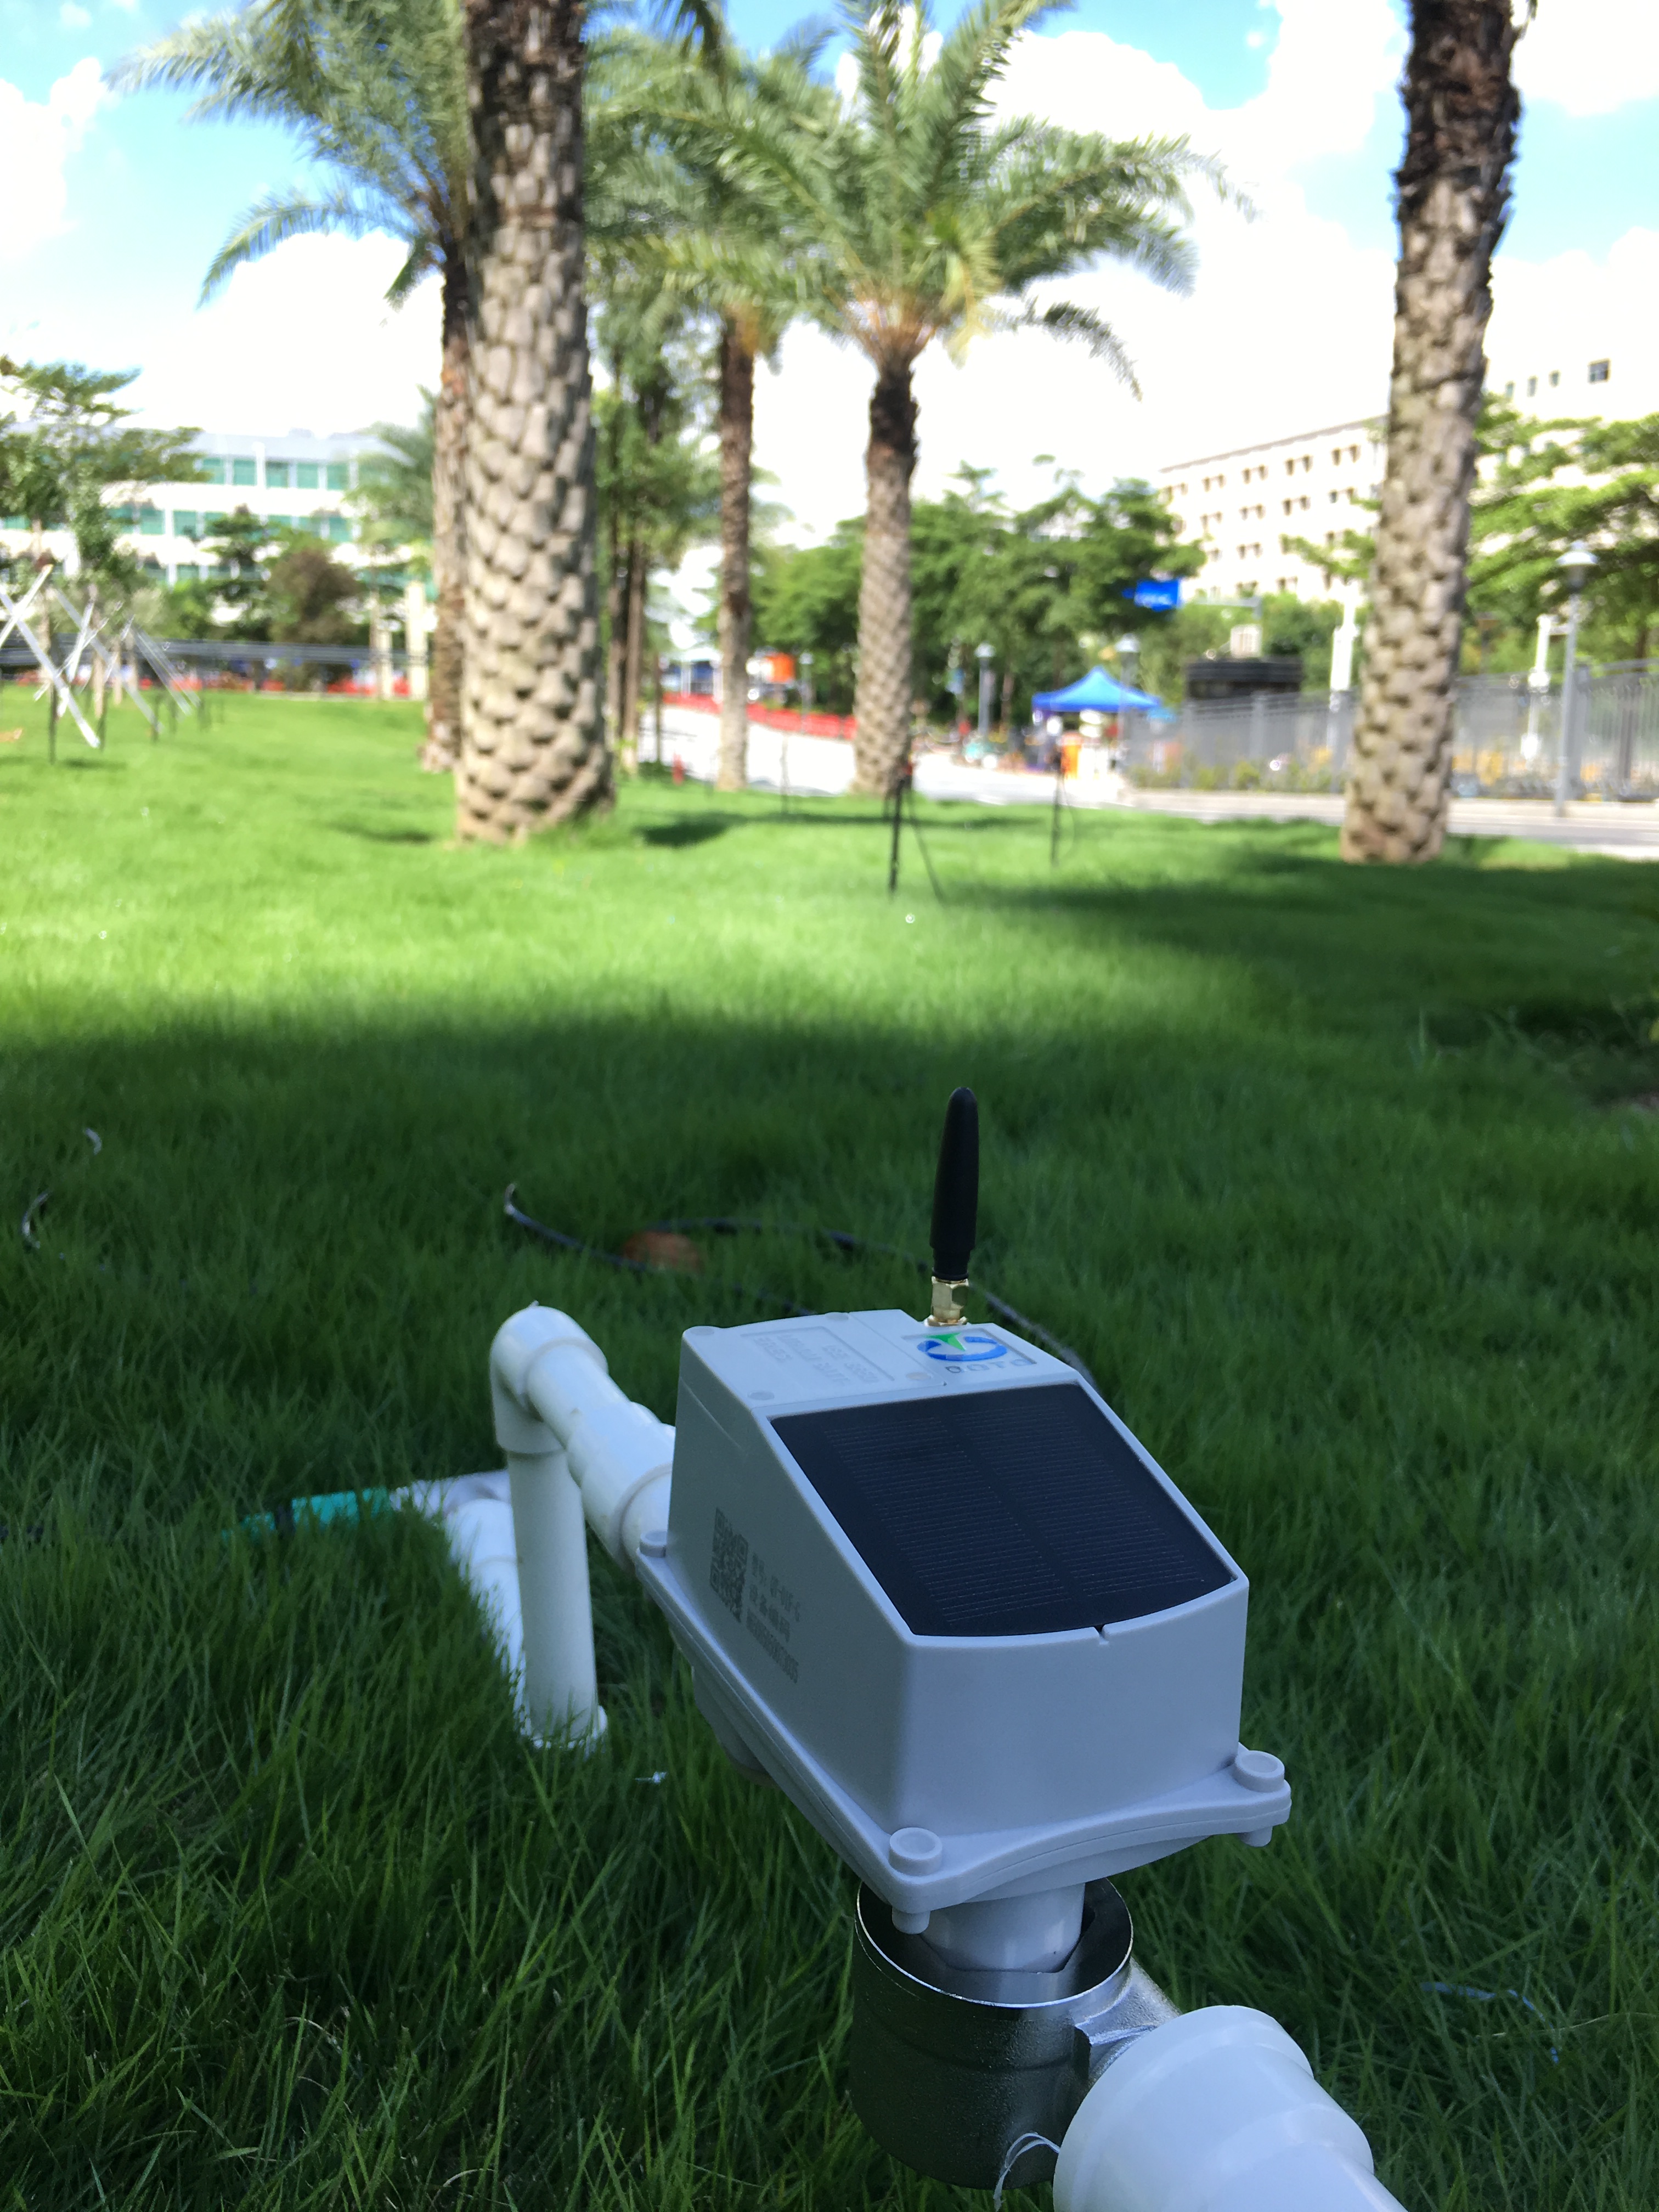 Temporizador de manguera de jardín inteligente controlado por GSM con servicios IoT totalmente gestionados